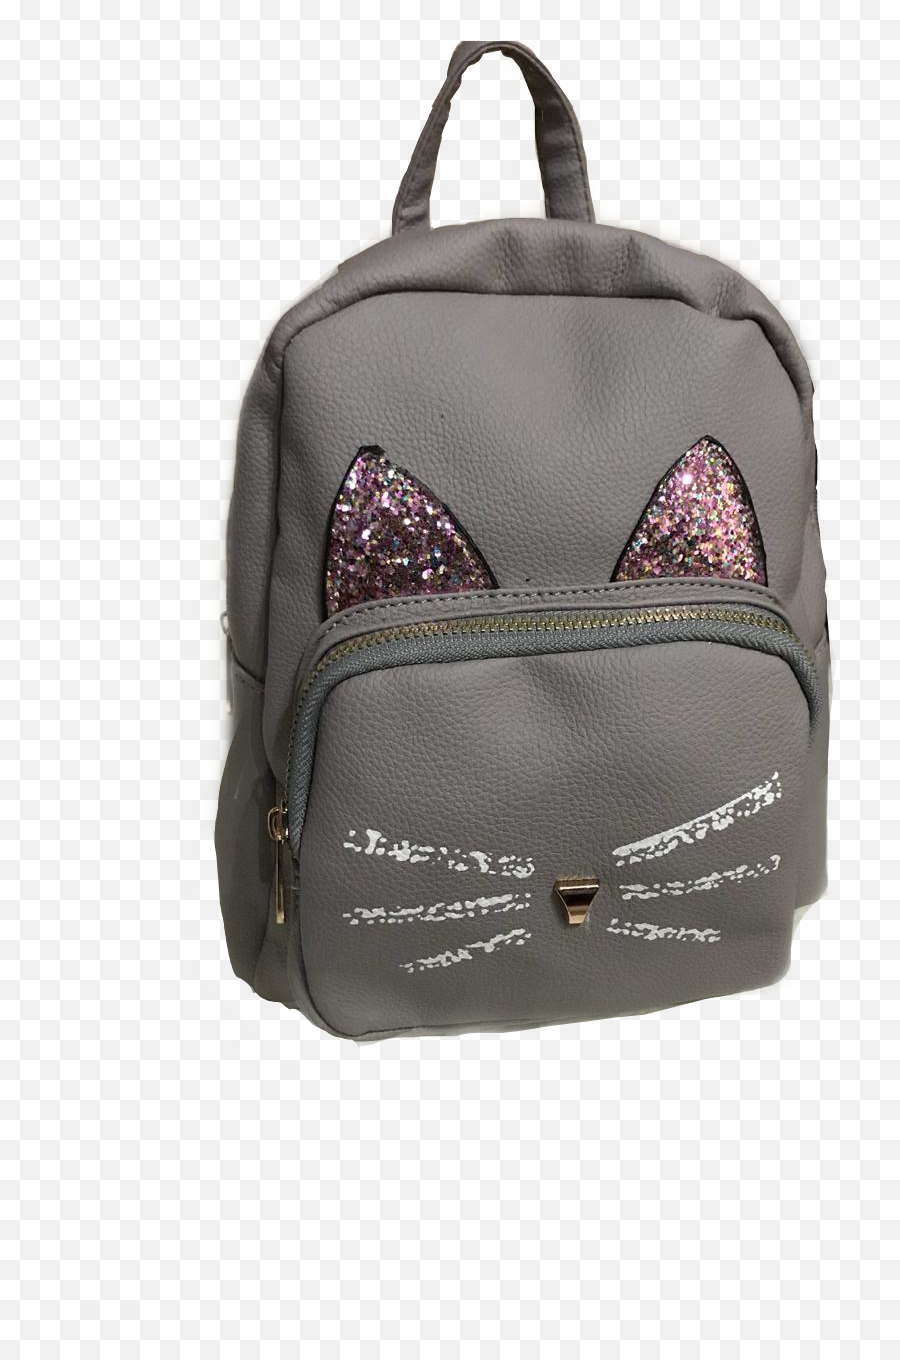 Backpack Cat Catbag Bag Babybag - Garment Bag Emoji,Hand And Backpack Emoji